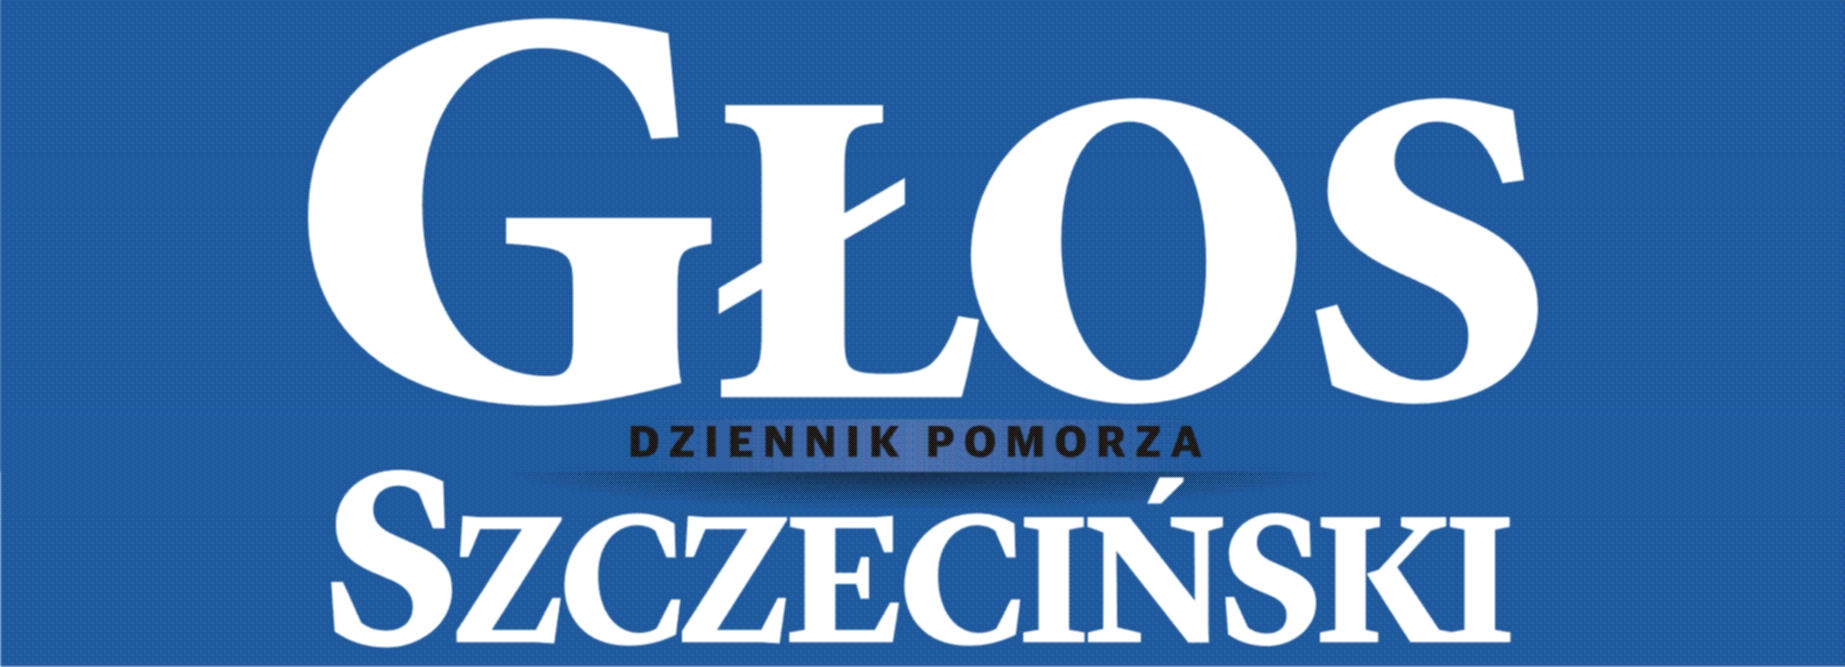 Dziennik Pomorza - Głos Szczeciński